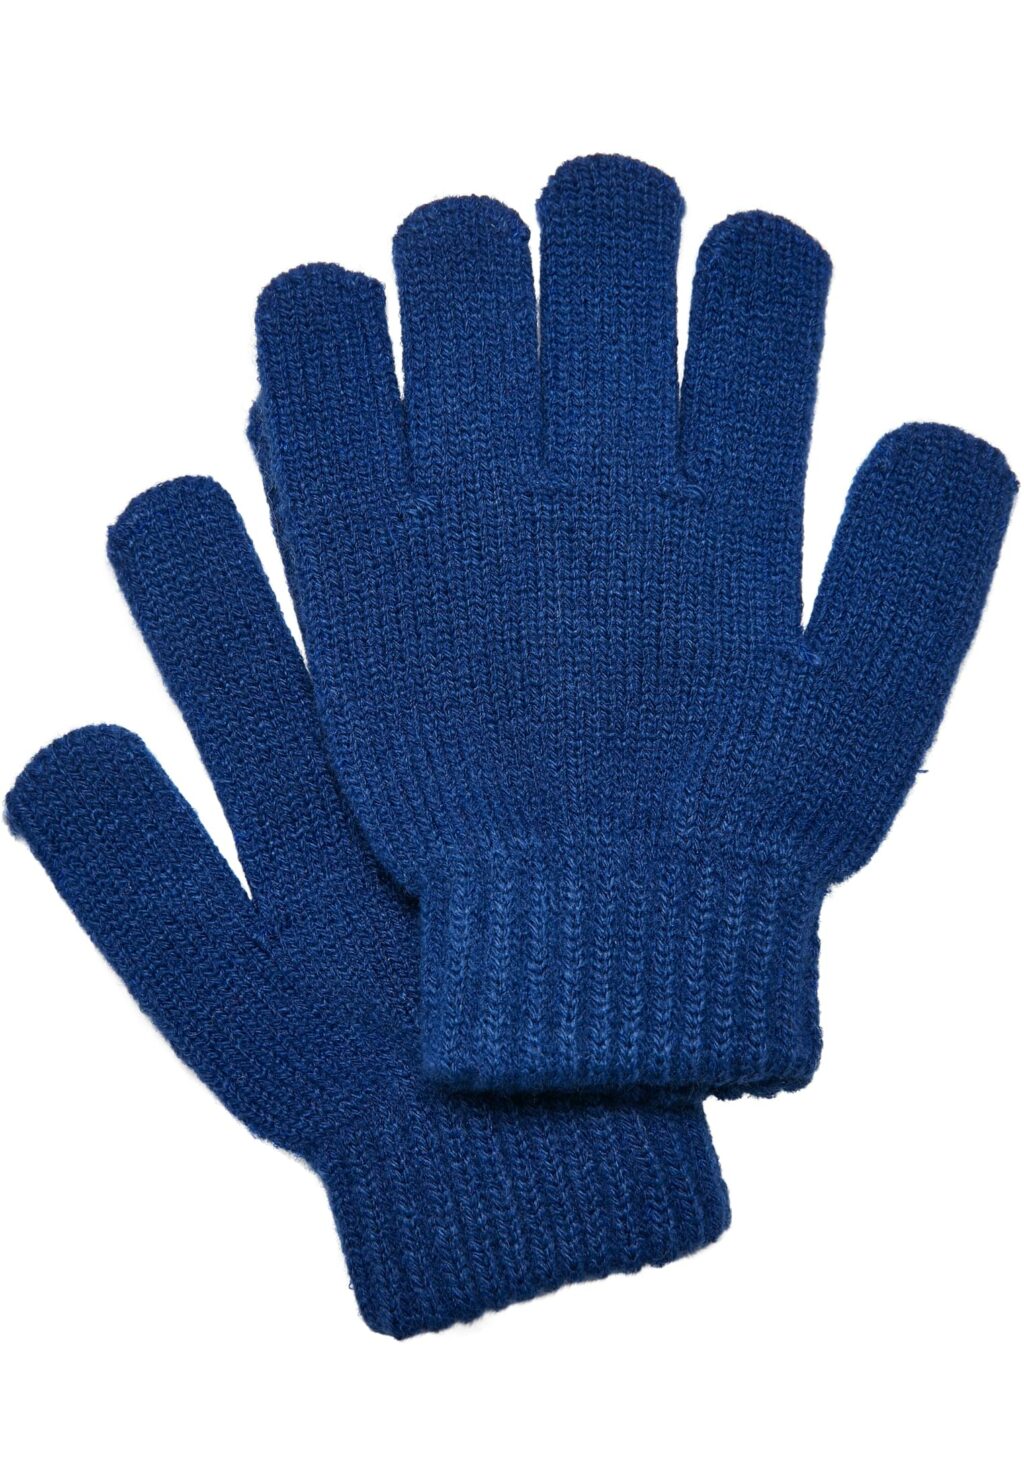 Knit Gloves Kids royal UCK209